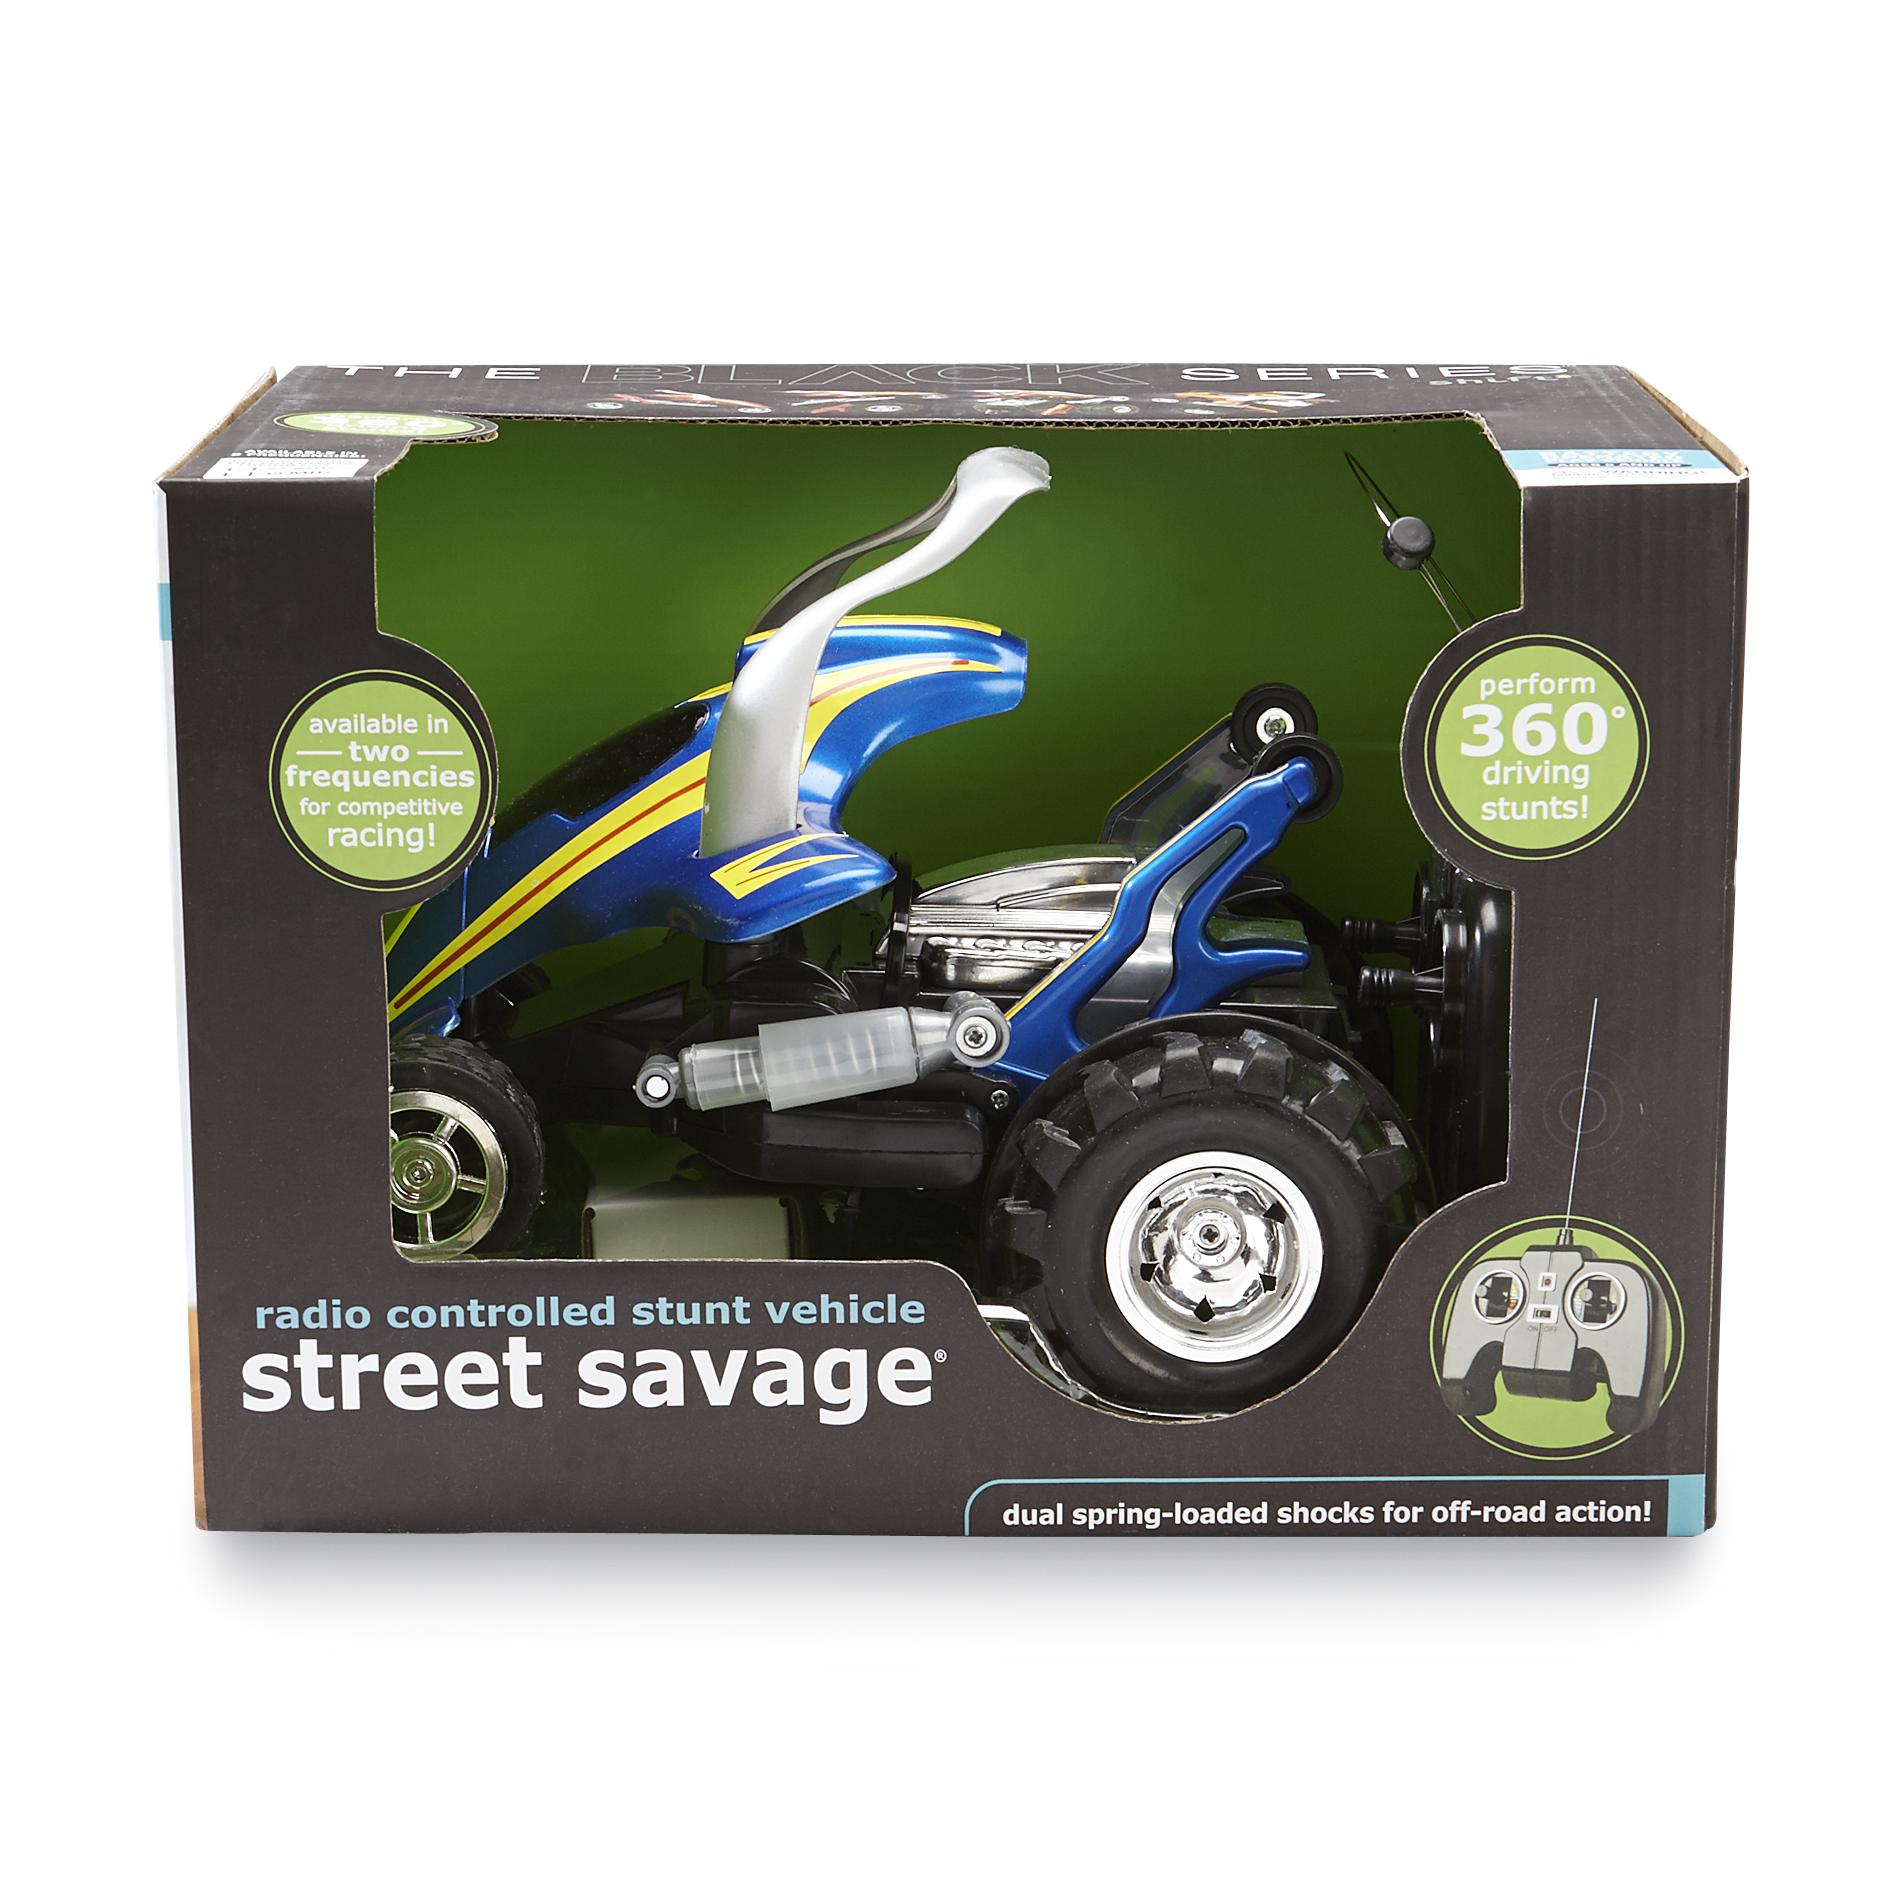 Street Savage 360 RC Stunt Vehicle